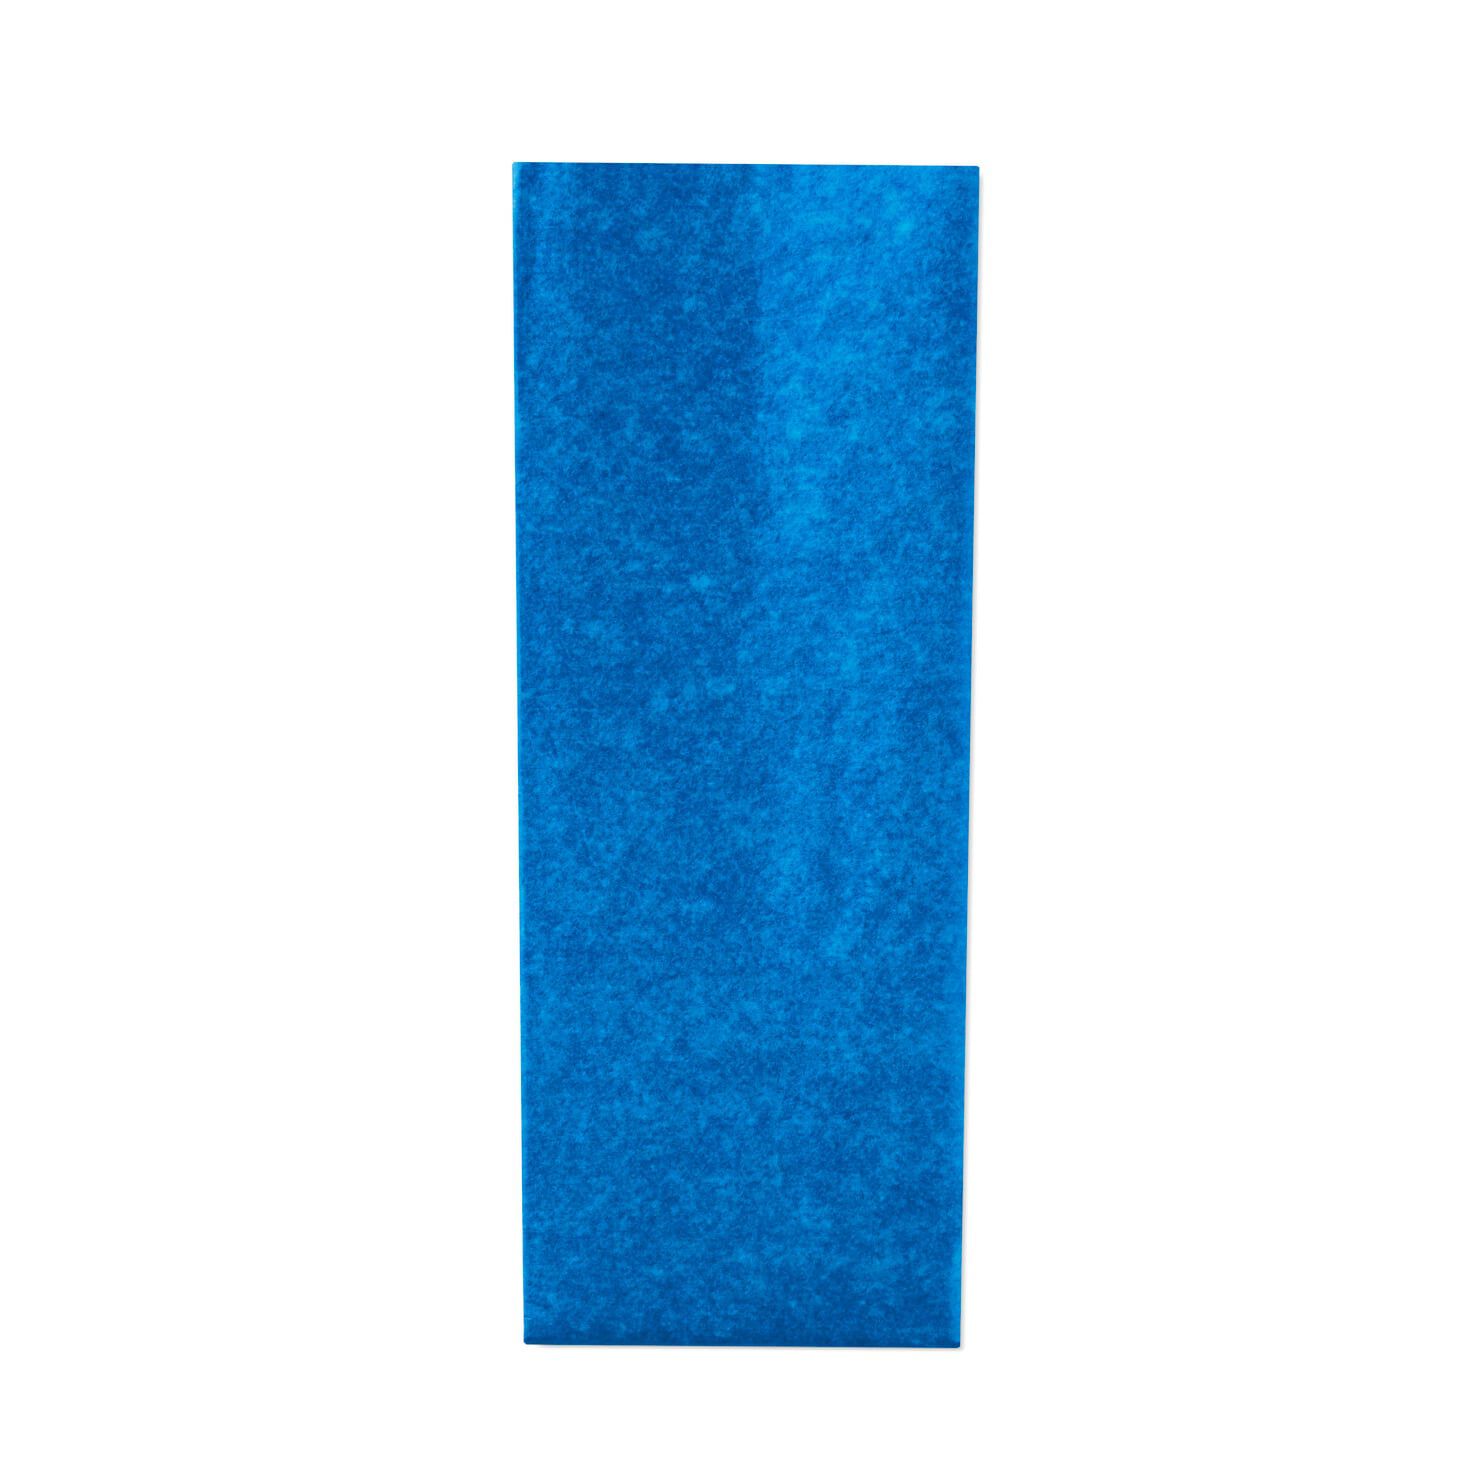 Hallmark Tissue Paper, Fiesta Blue, 8 sheets